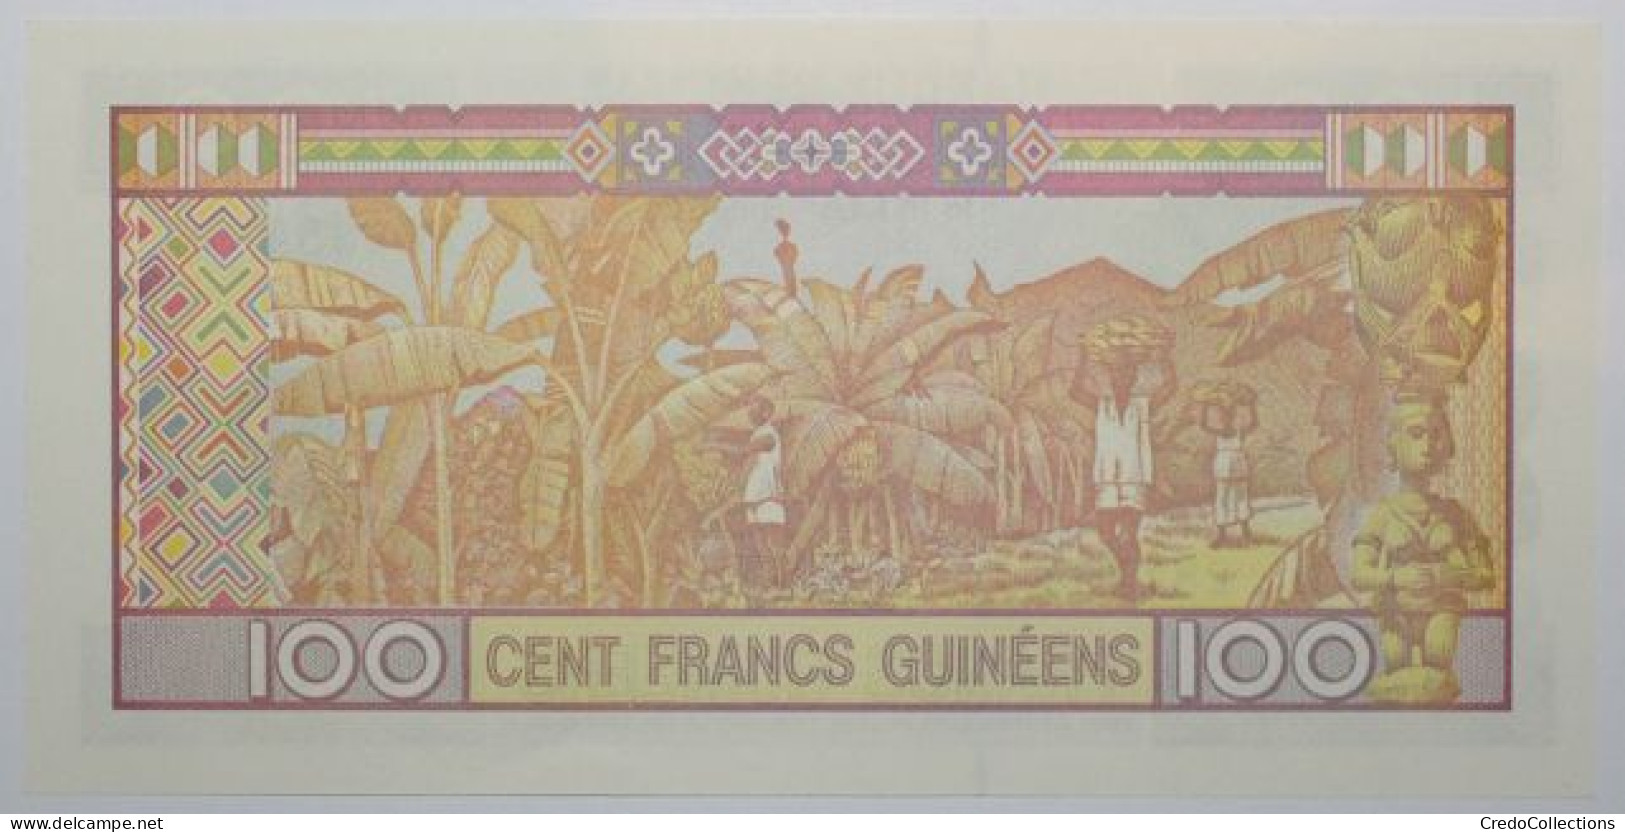 Guinée - 100 Francs Guinéens - 2012 - PICK 35b - NEUF - Guinea